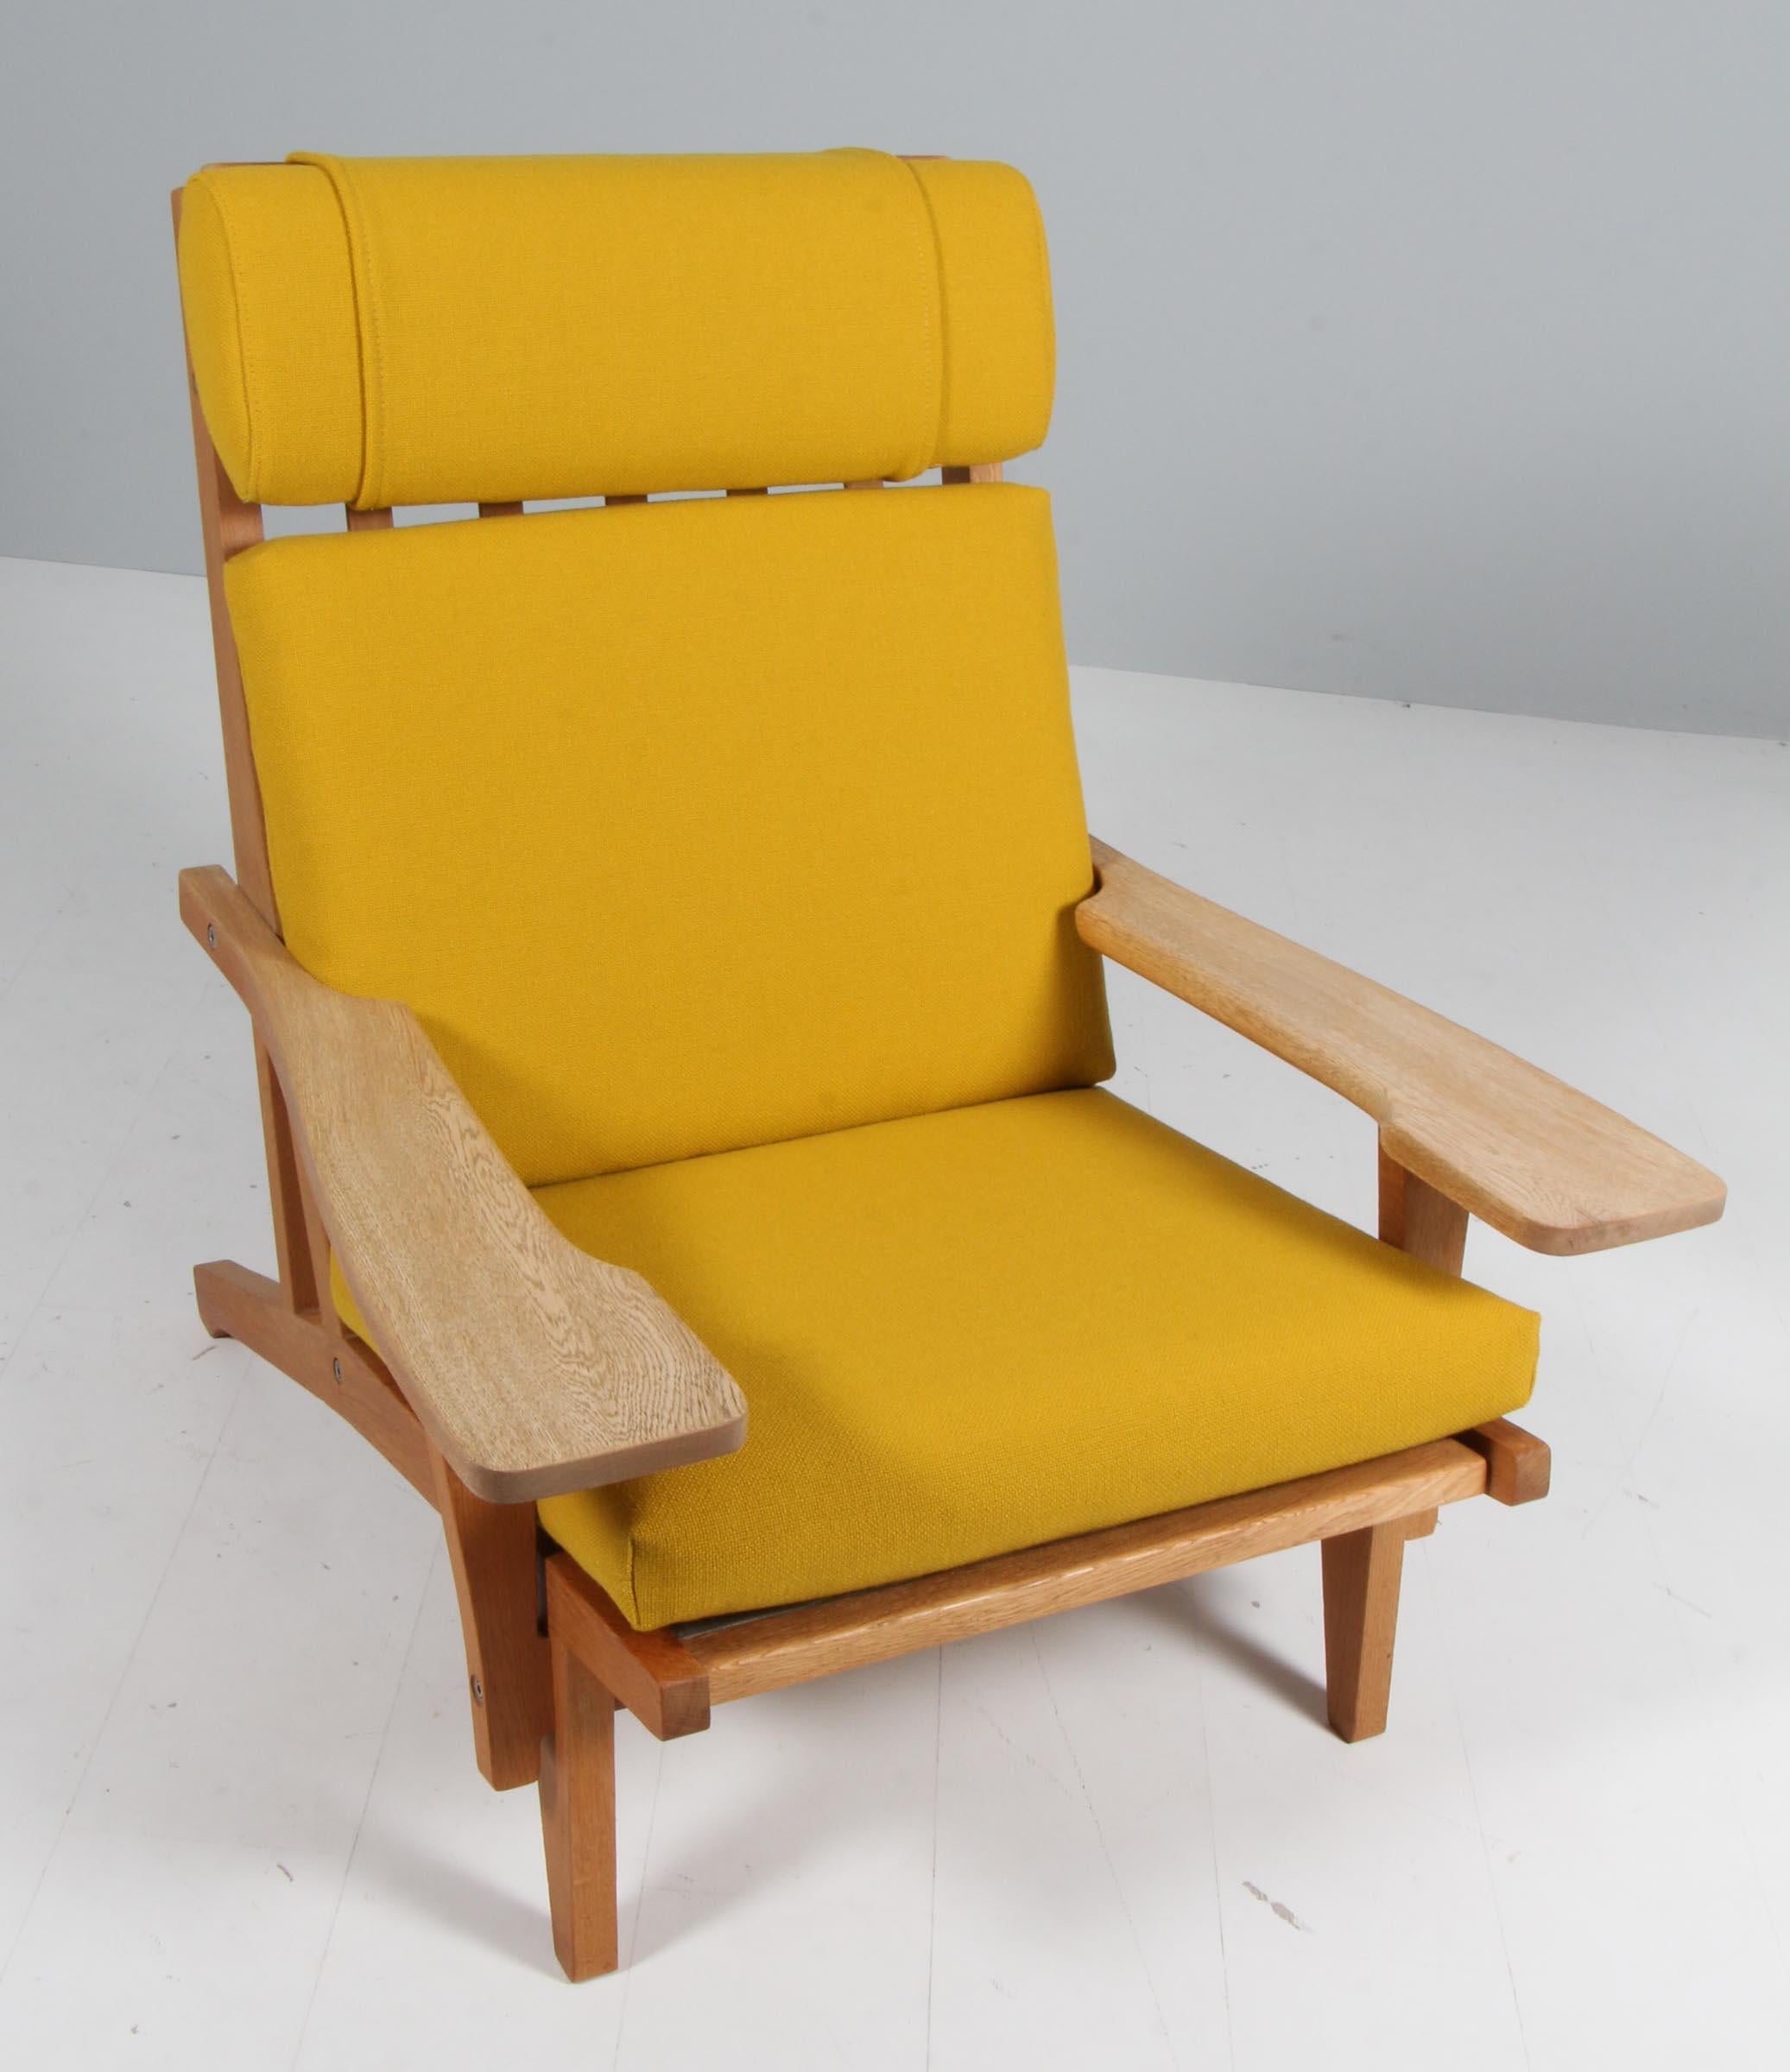 Chaise longue Hans J. Wegner avec coussins détachés, nouvellement recouverte de laine Hallingdal jaune de Kvadrat.

Cadre en chêne. Avec accoudoirs.

Modèle GE-375, fabriqué par GETAMA.